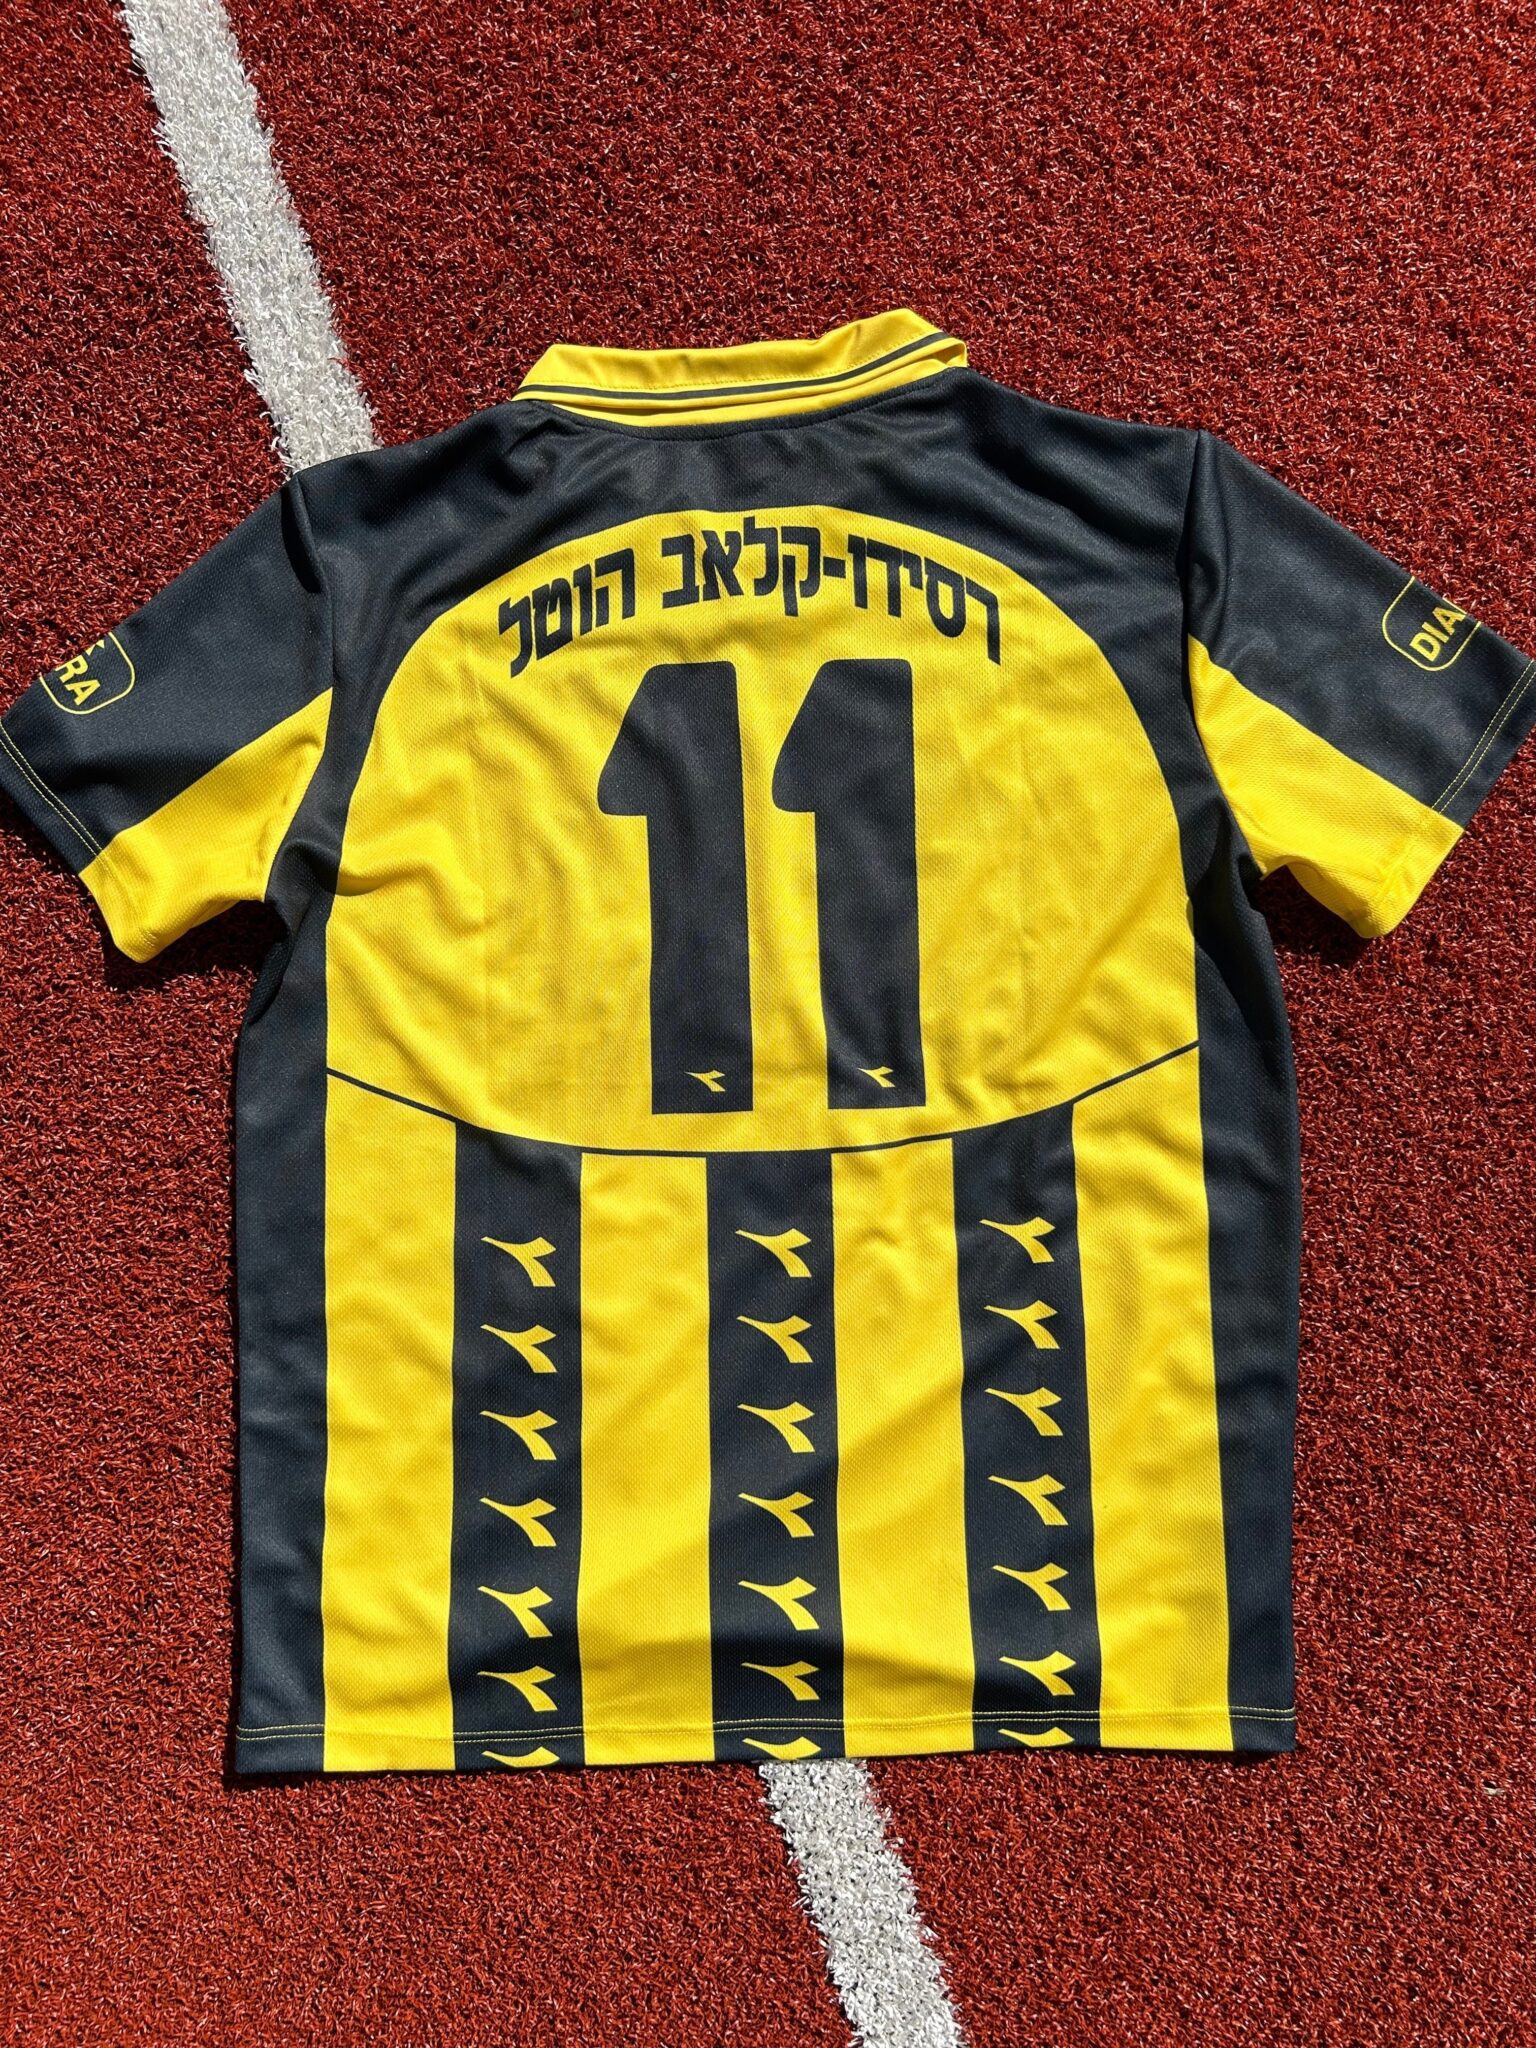 Beitar Jerusalem Football Shirt 1996/1997 Israel Retro Jersey Vintage Eli Ohana #11 ביתר ירושלים - Sport Club Memories